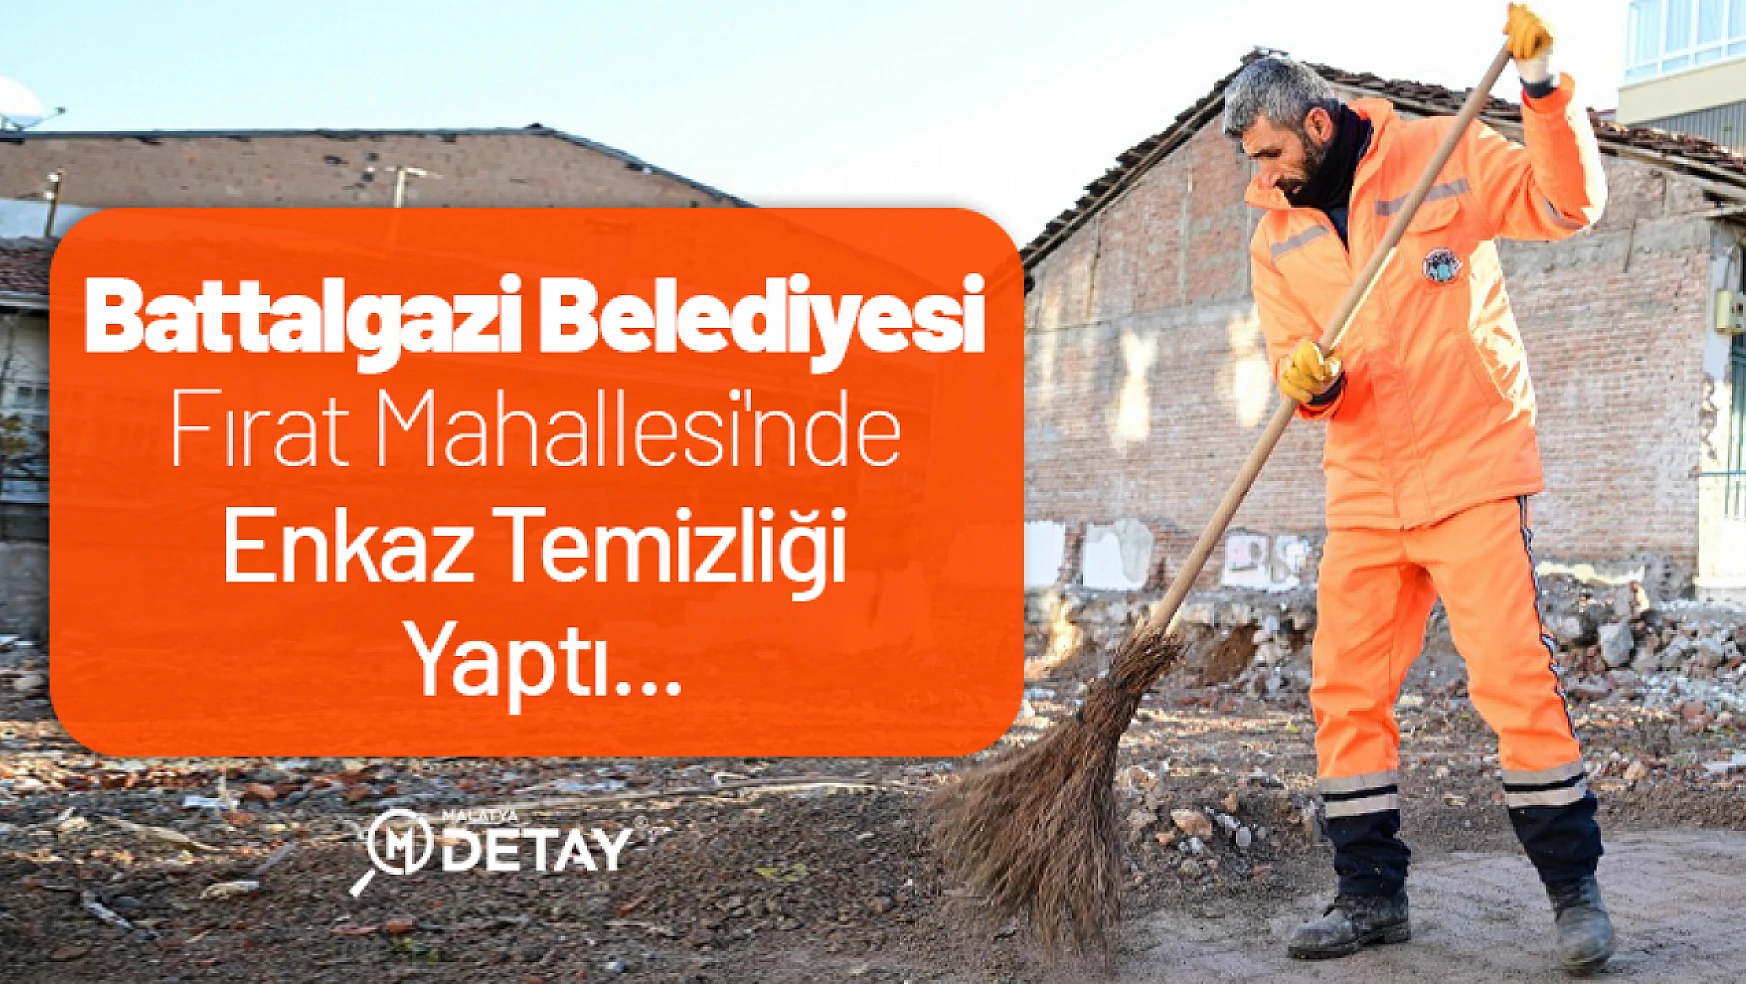 Battalgazi Belediyesi Fırat Mahallesi'nde Enkaz Temizliği Yaptı...